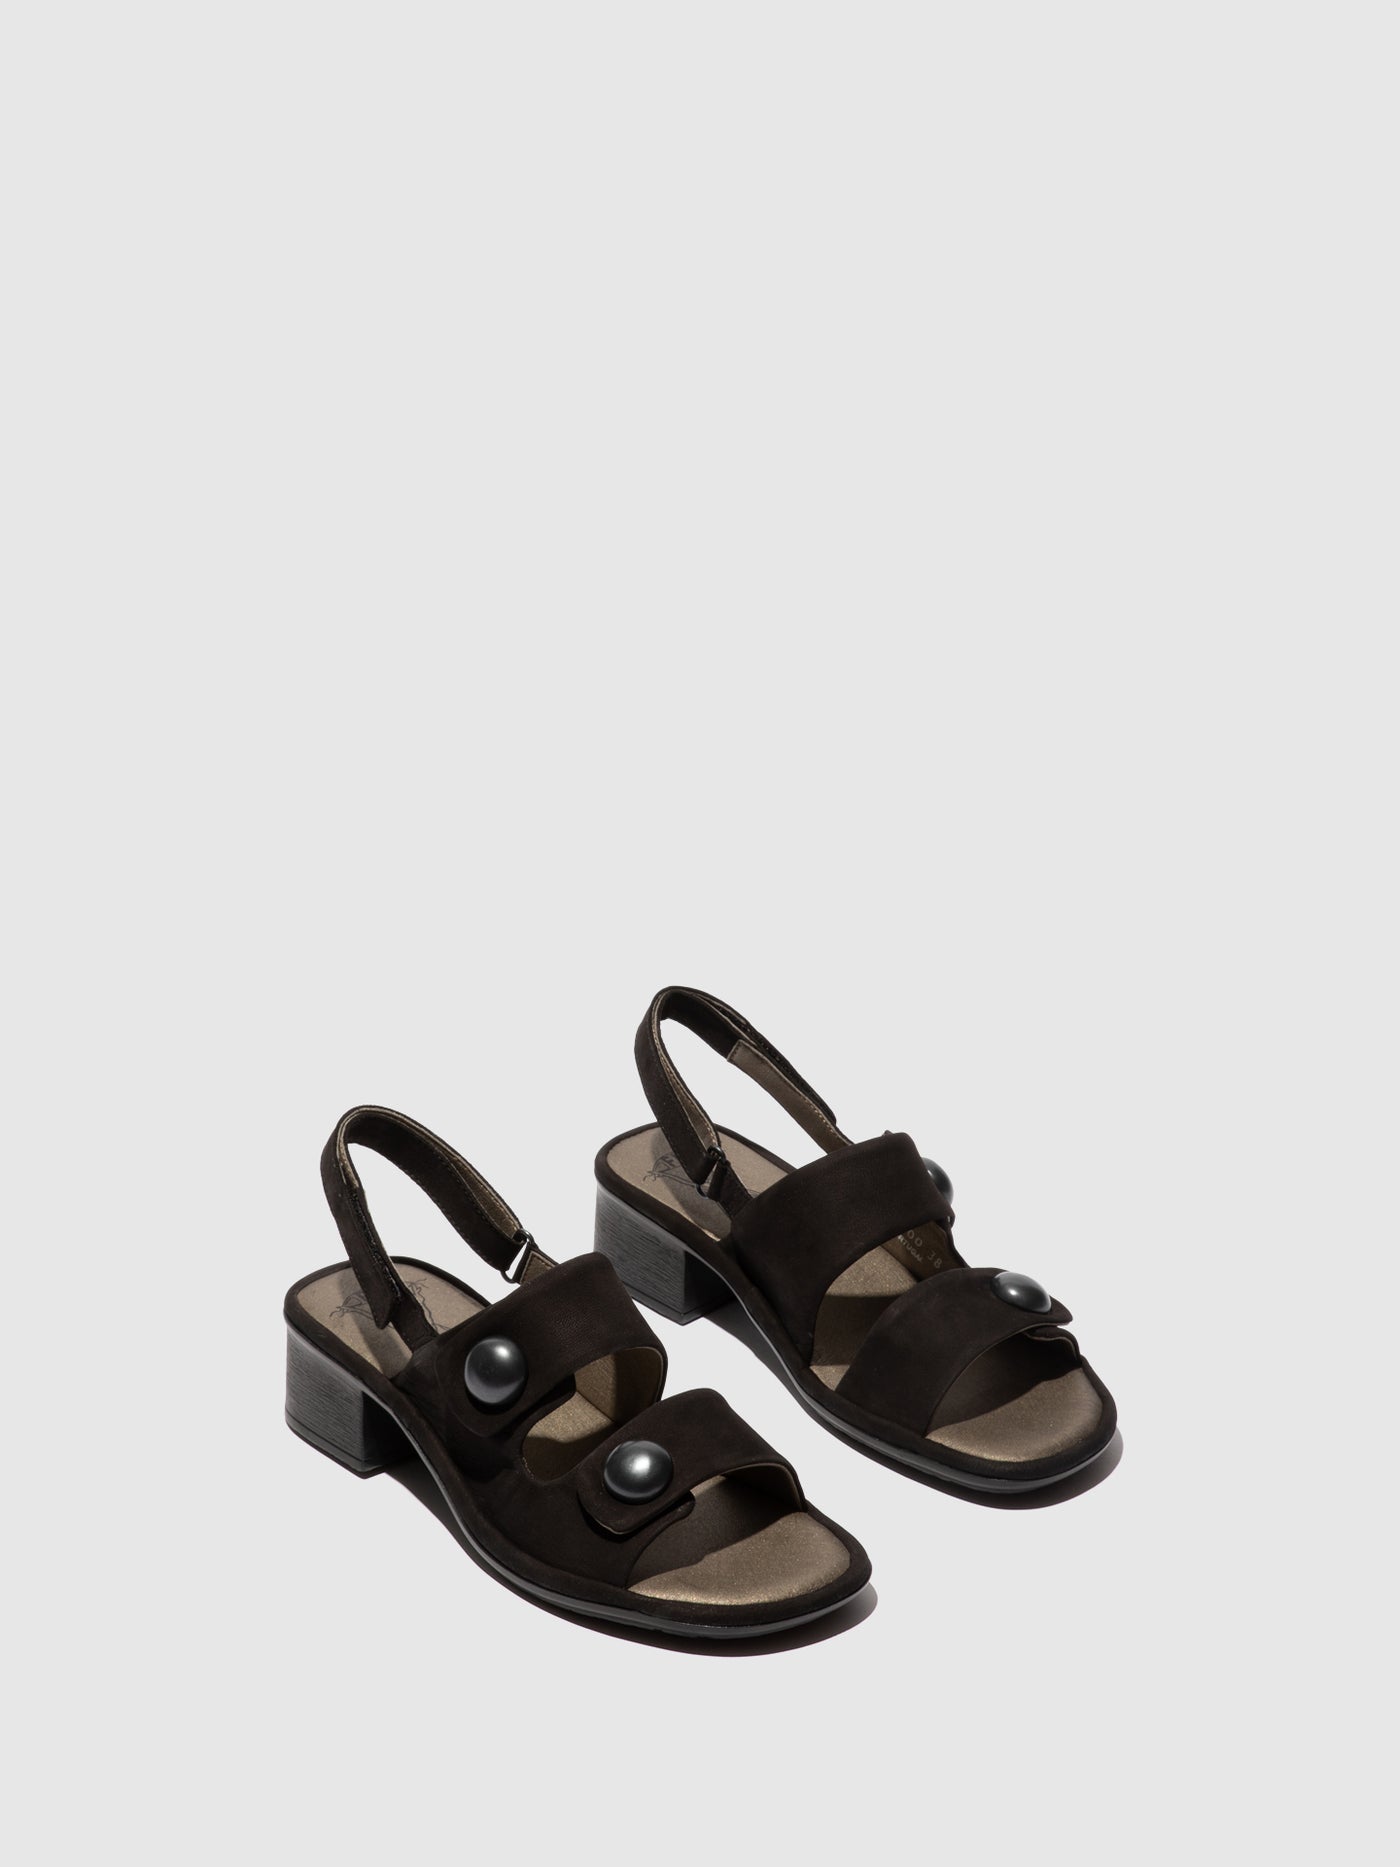 Sling-Back Sandals EBLA489FLY BLACK